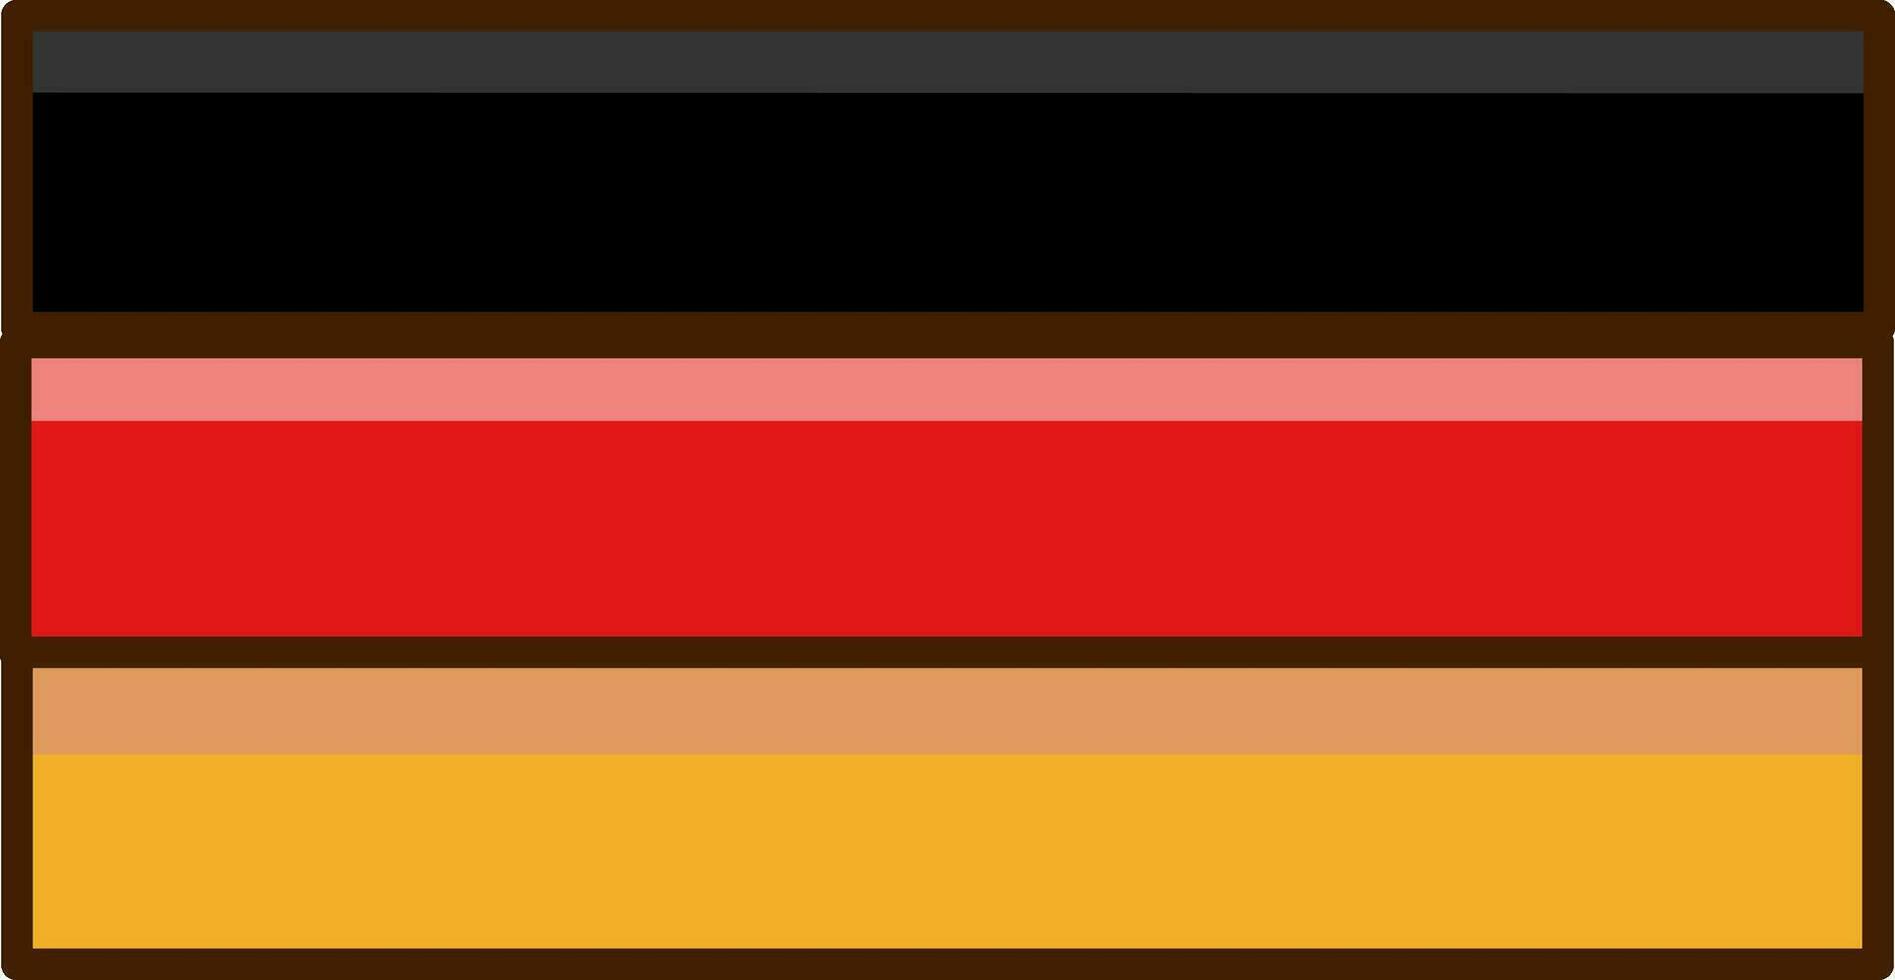 platt illustration av Tyskland flagga ikon. vektor